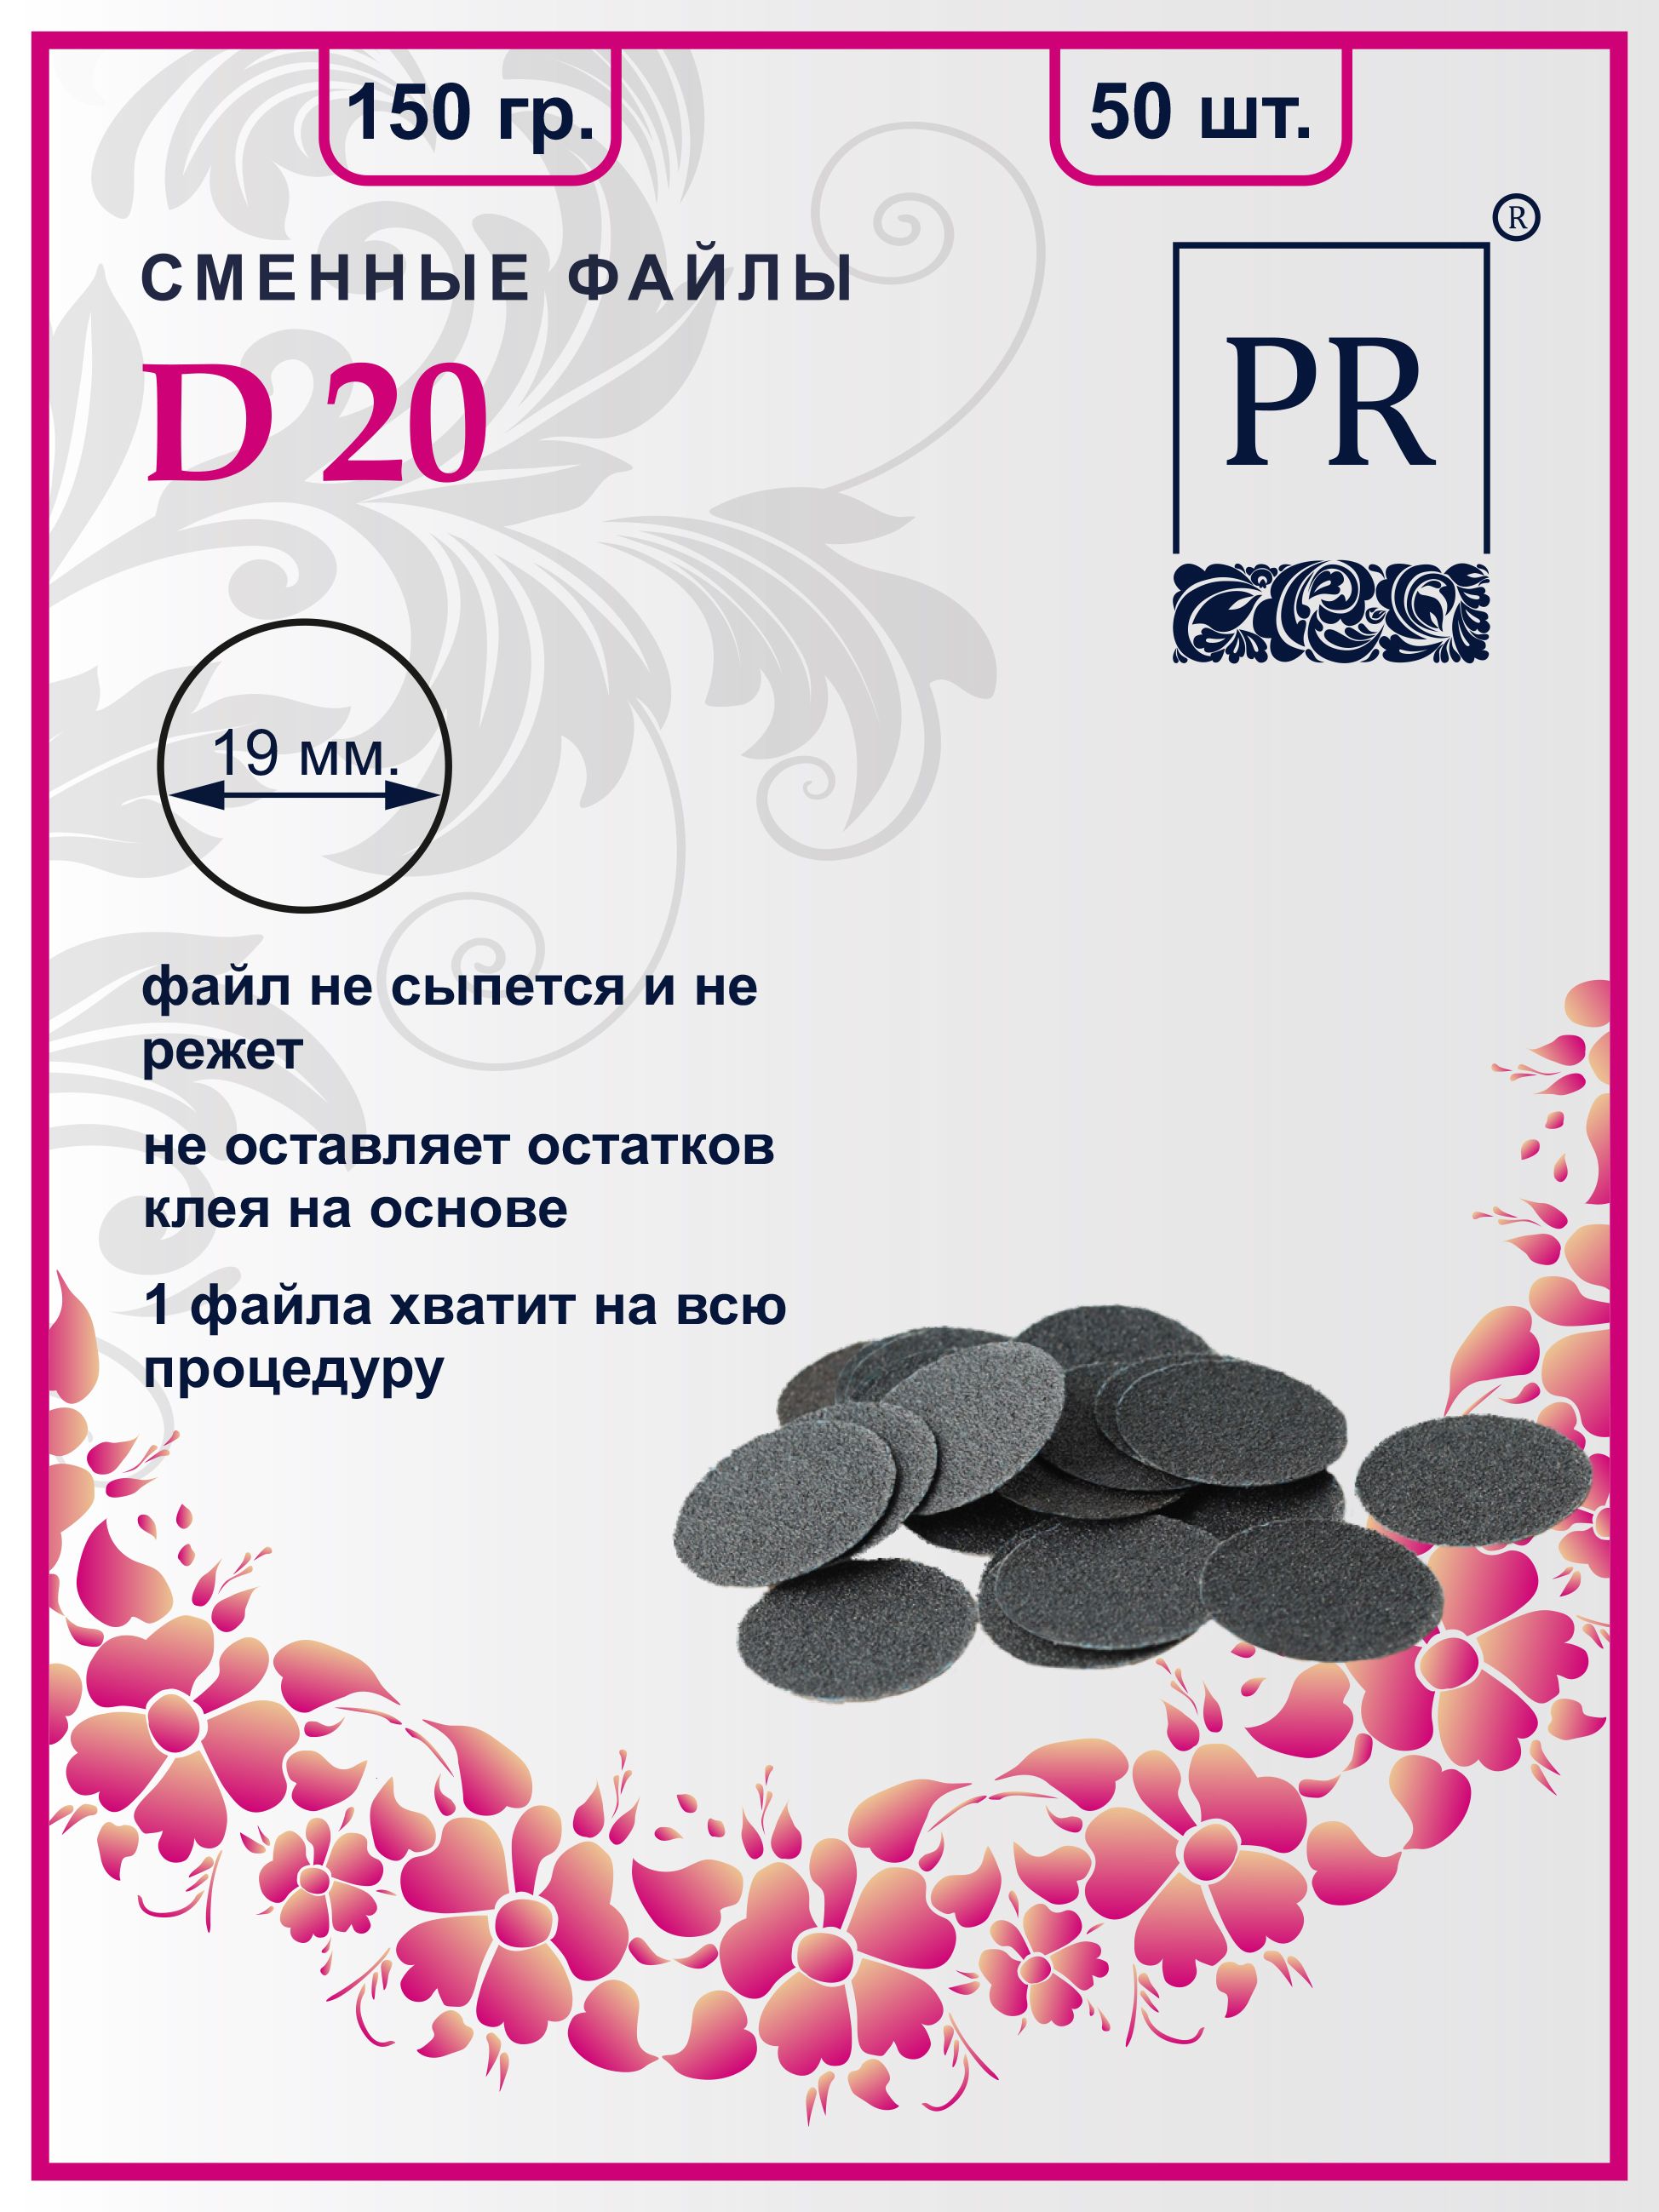 Сменные файлы Pilochki Russia диски для педикюра для диска М 150 грит 50 штук